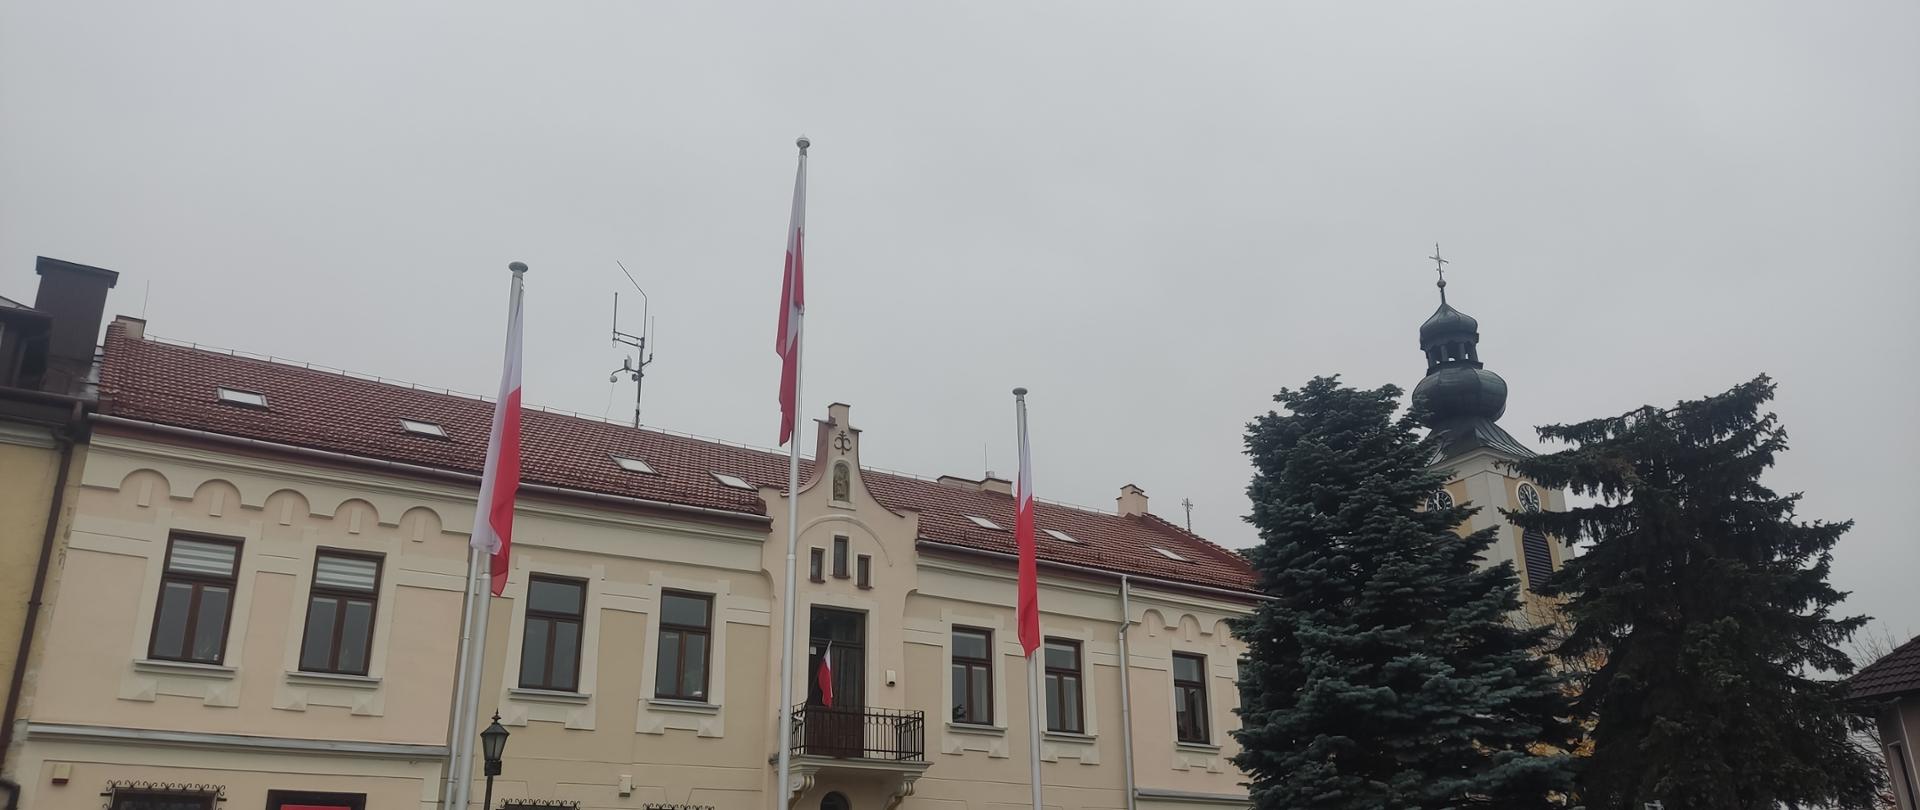 Widok na budynek urzędu z flagami narodowymi